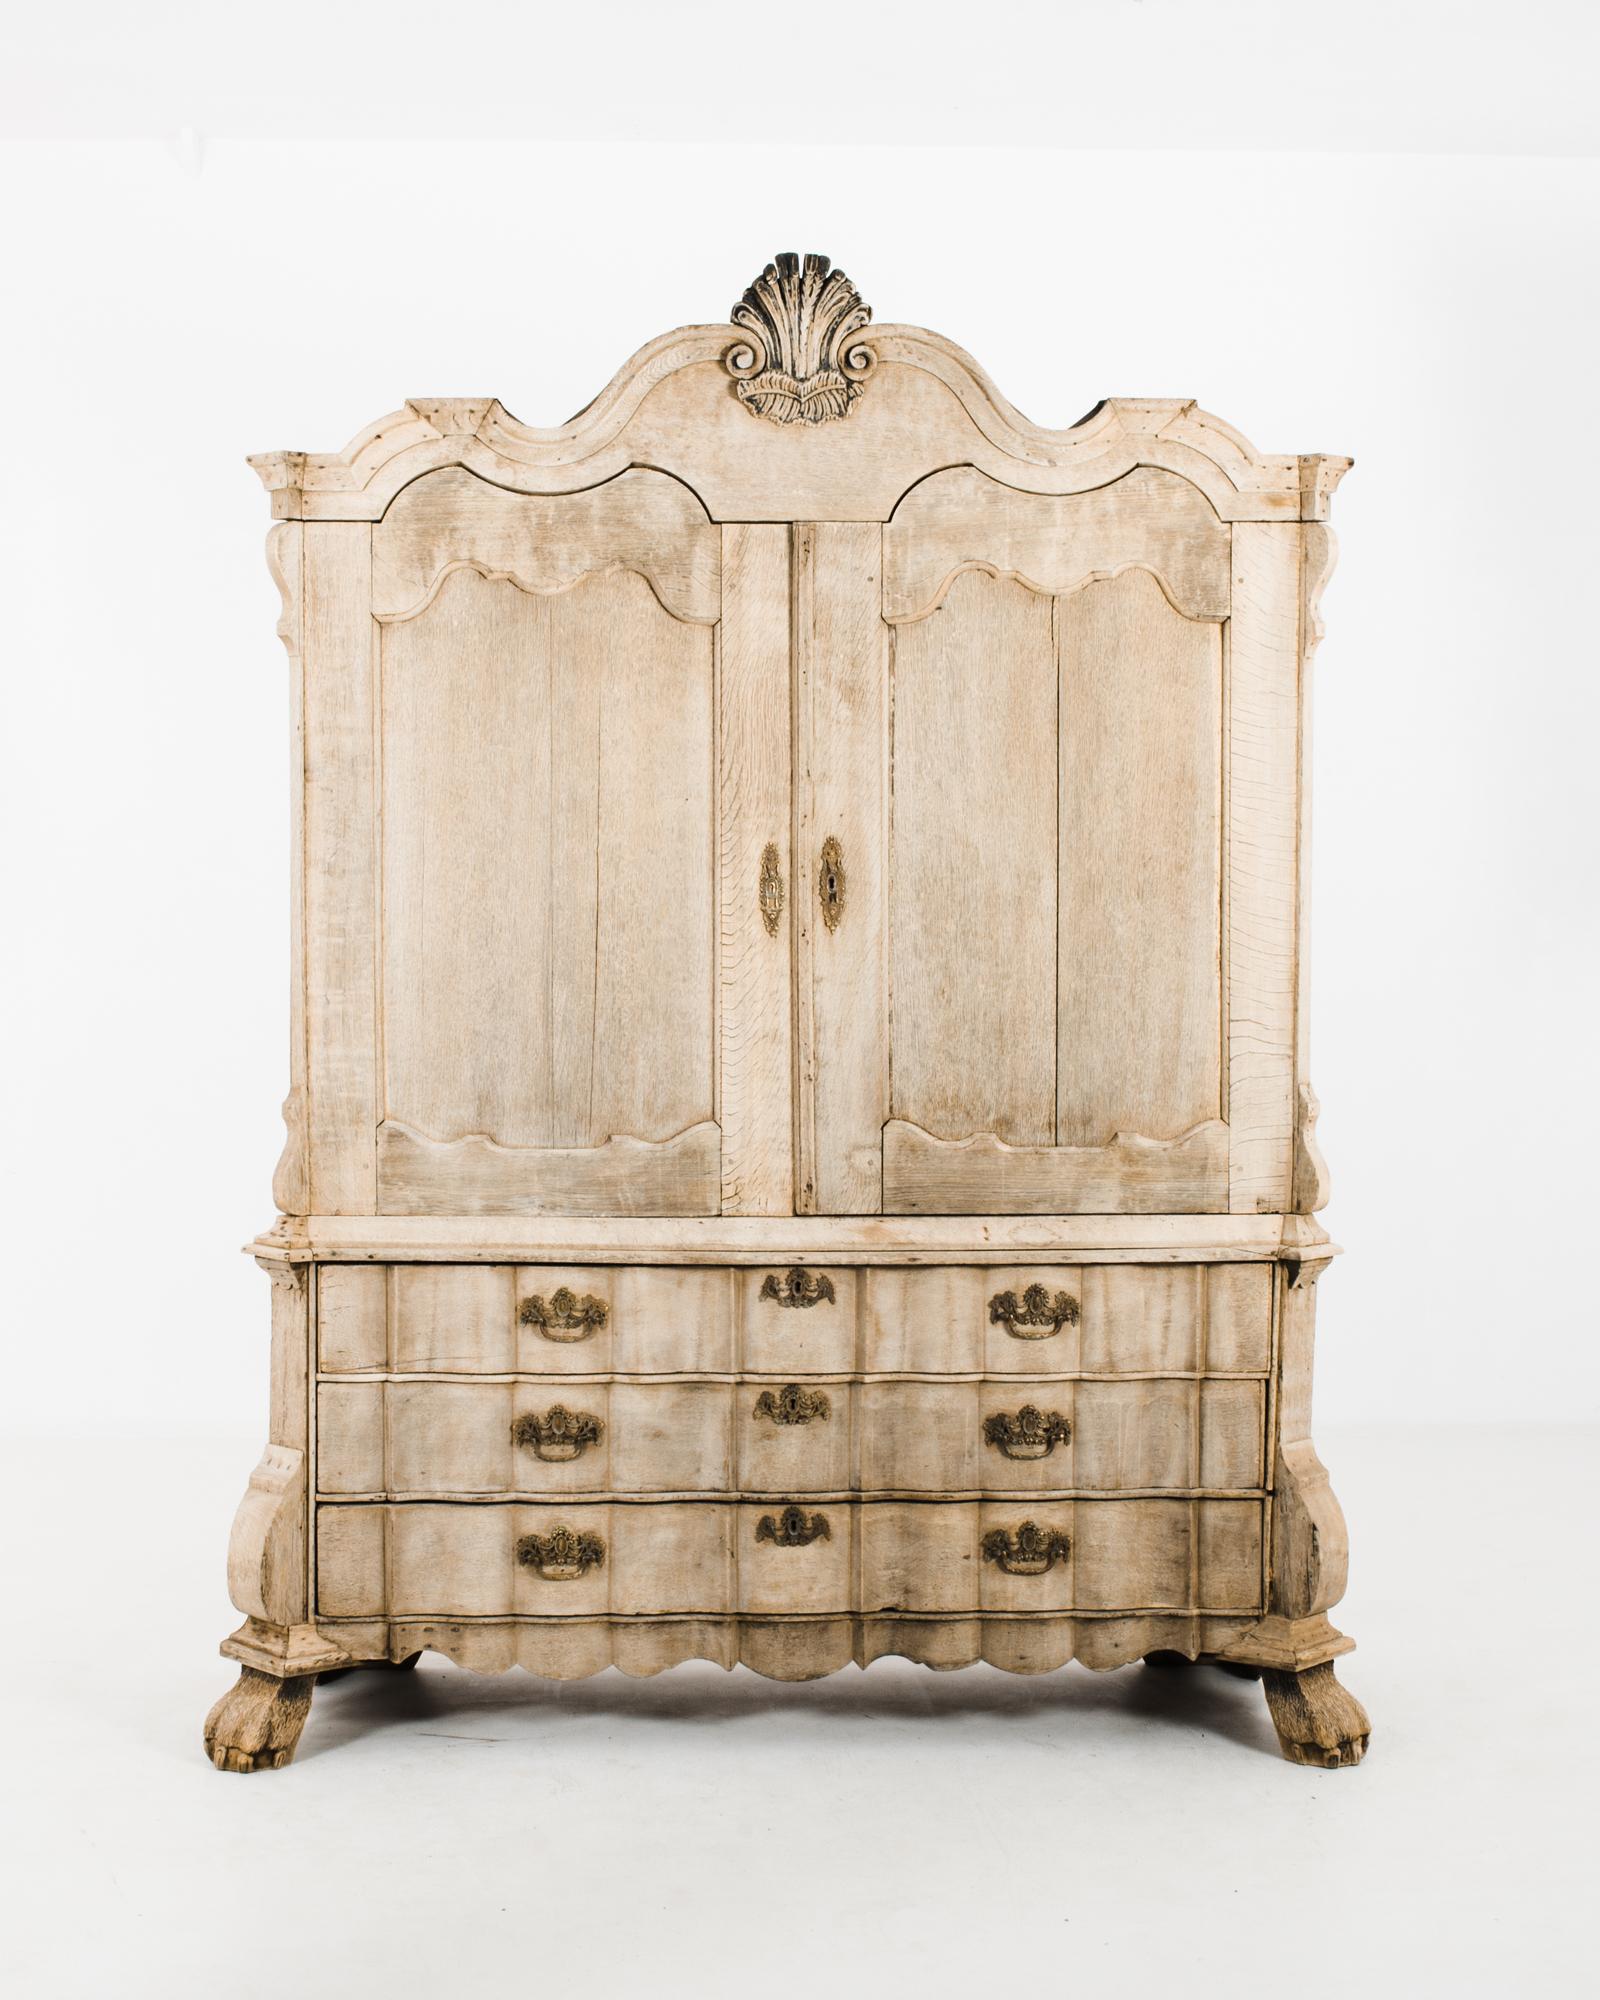 Cette armoire en chêne blanchi a été fabriquée aux Pays-Bas, vers 1780. Il présente un écusson orné, très répandu dans le mobilier hollandais des XVIIIe et XIXe siècles, avec une coquille Saint-Jacques et des feuilles. Le meuble supérieur se compose